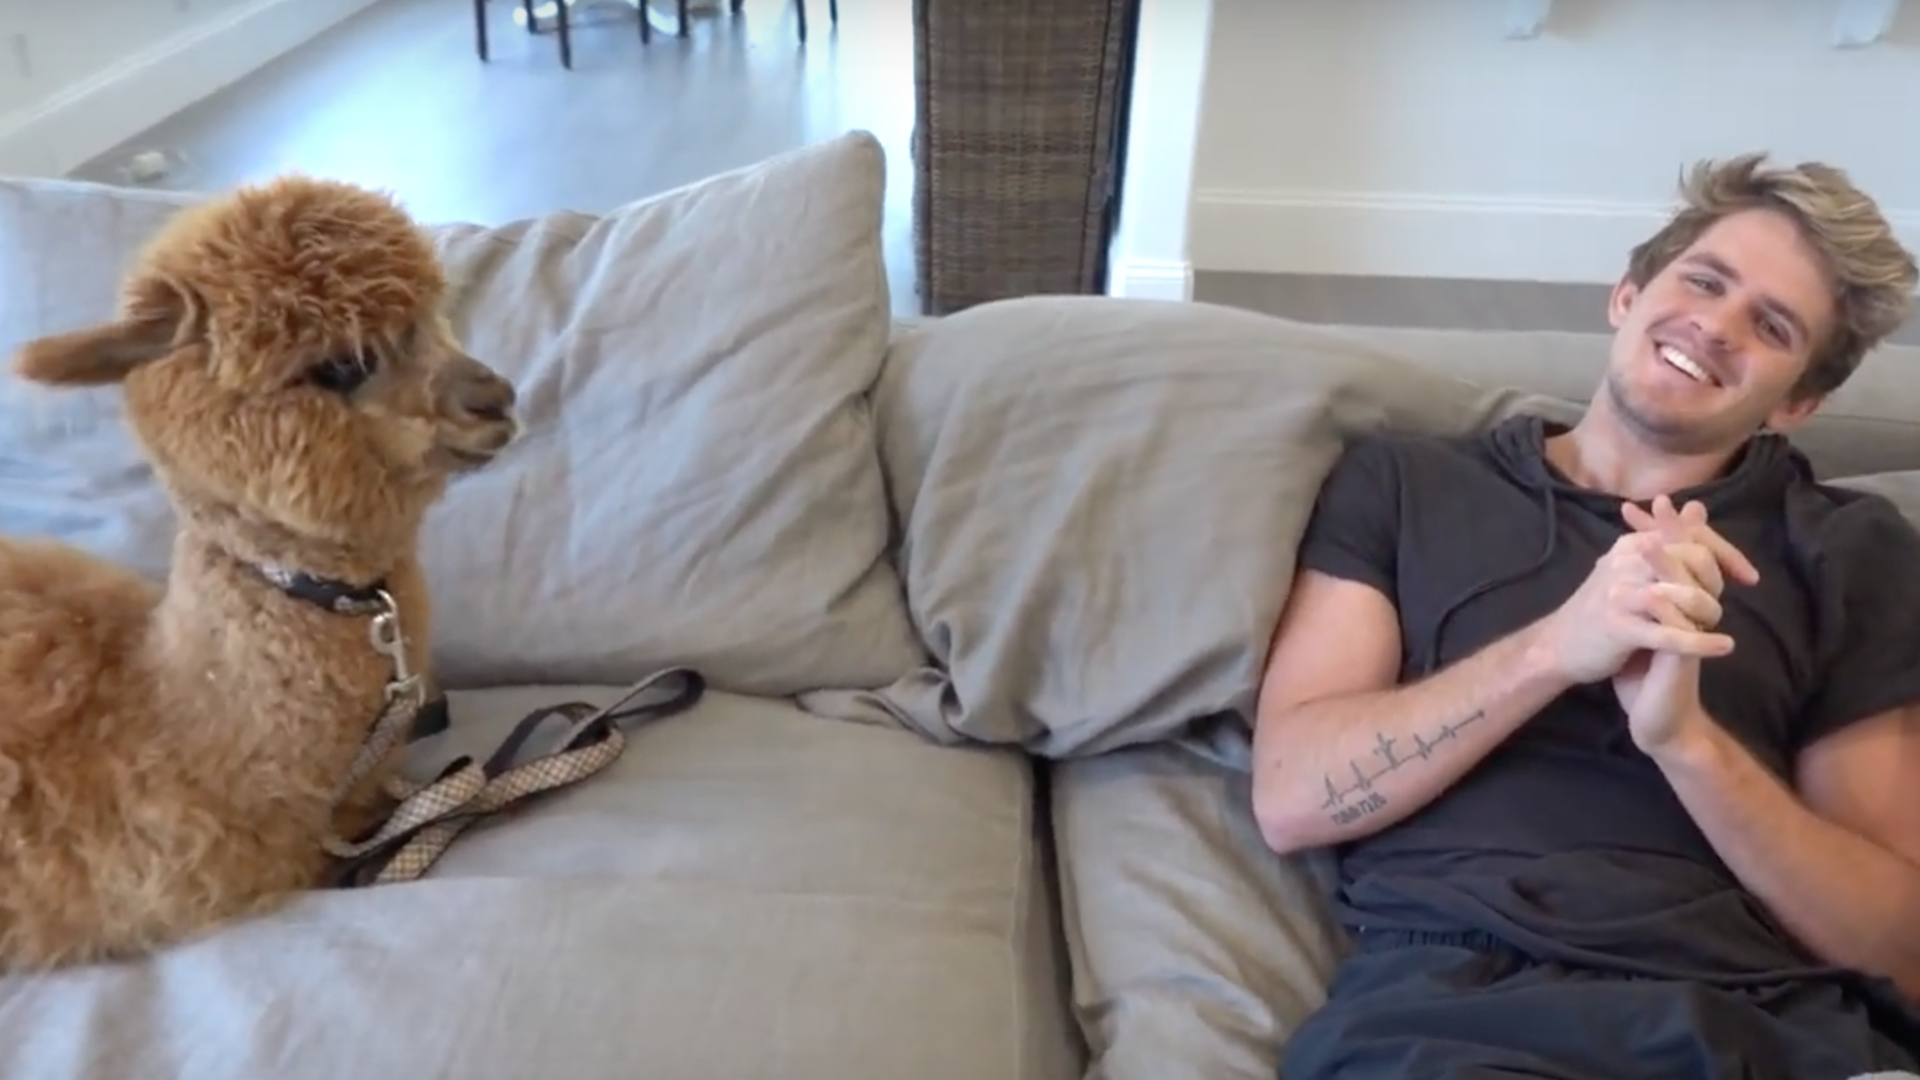 Cole shares a sofa with an alpaca